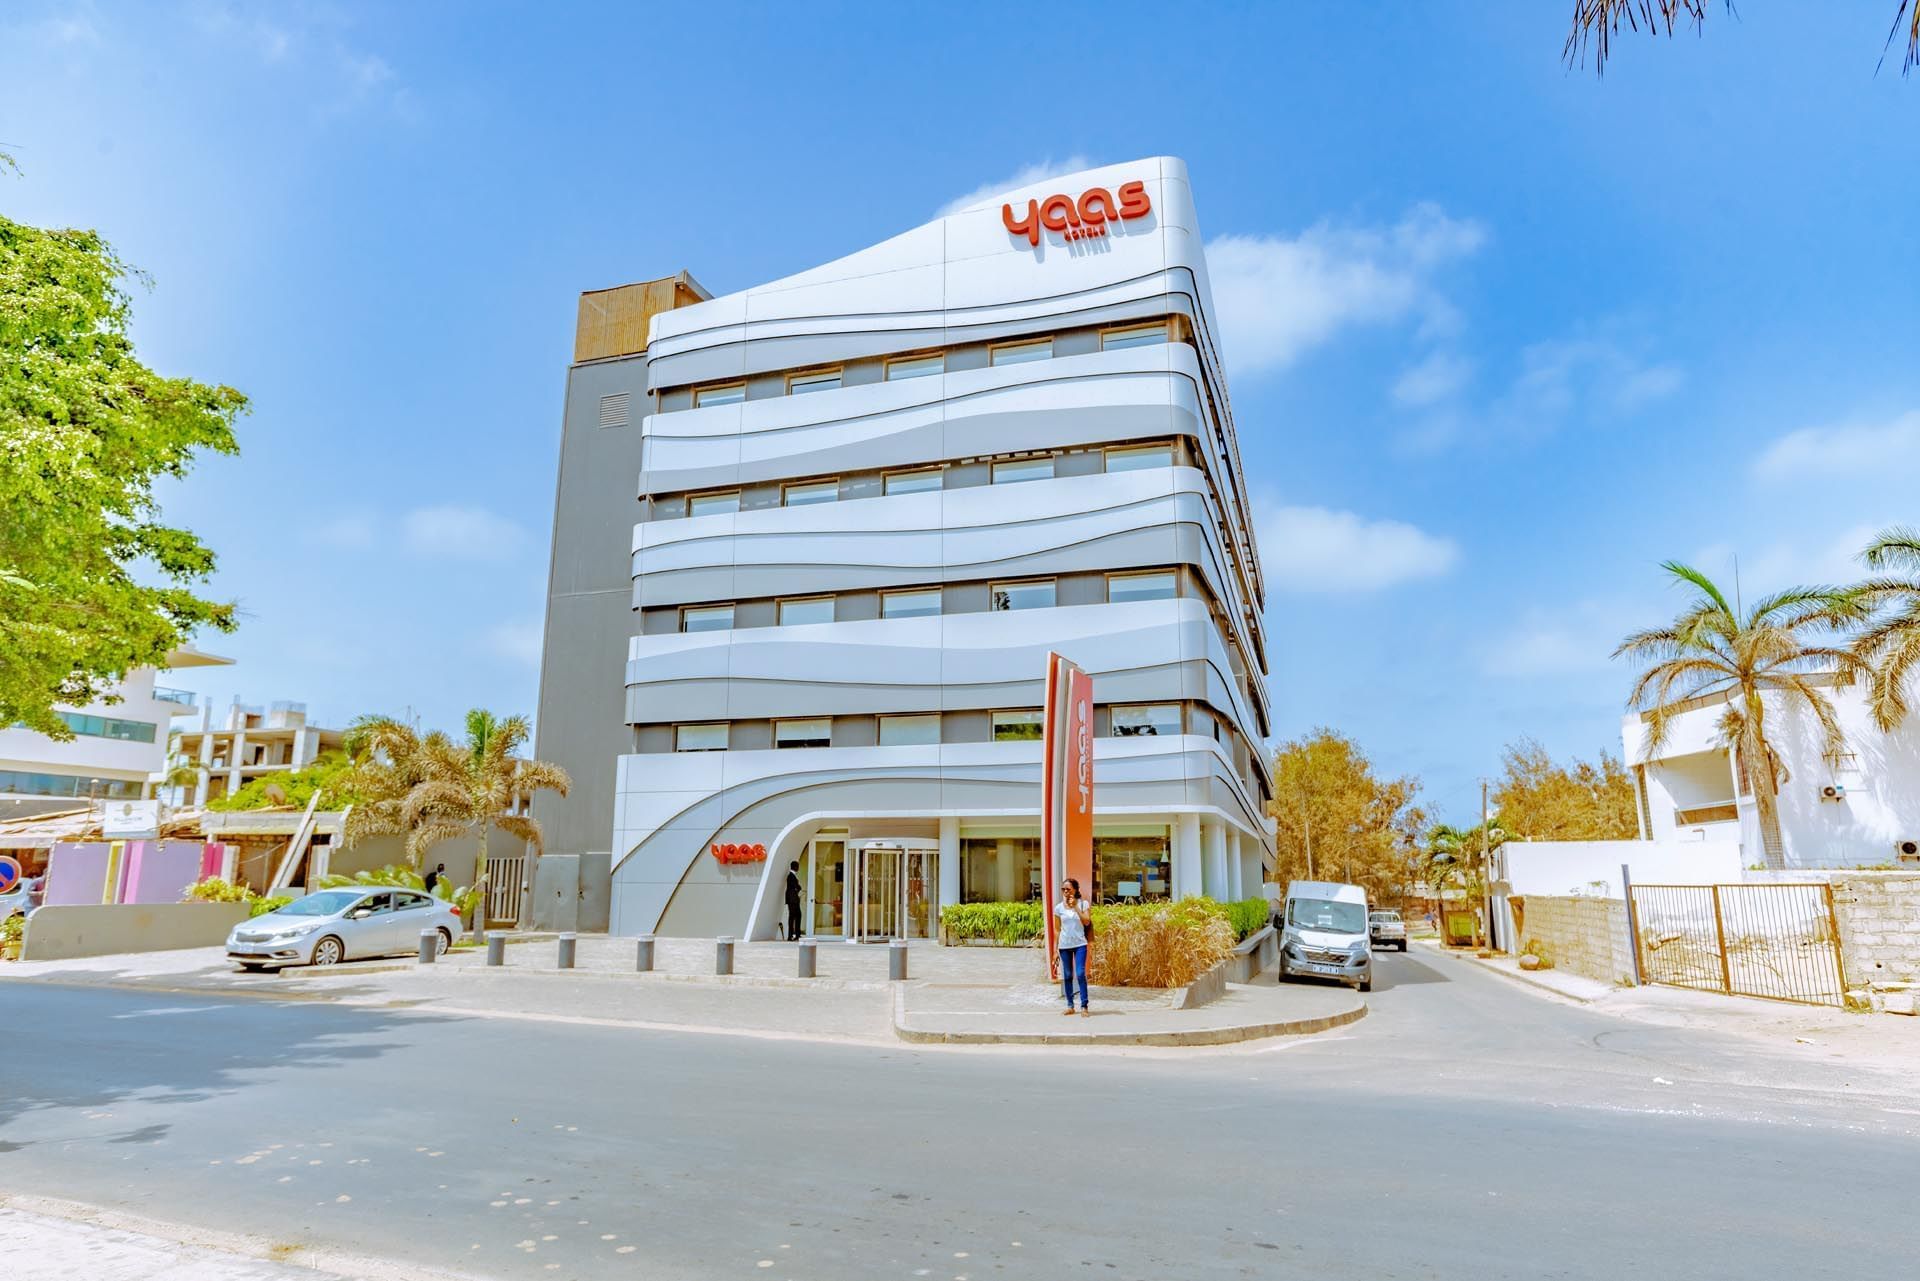 Yaas Hotel Almadies Dakar